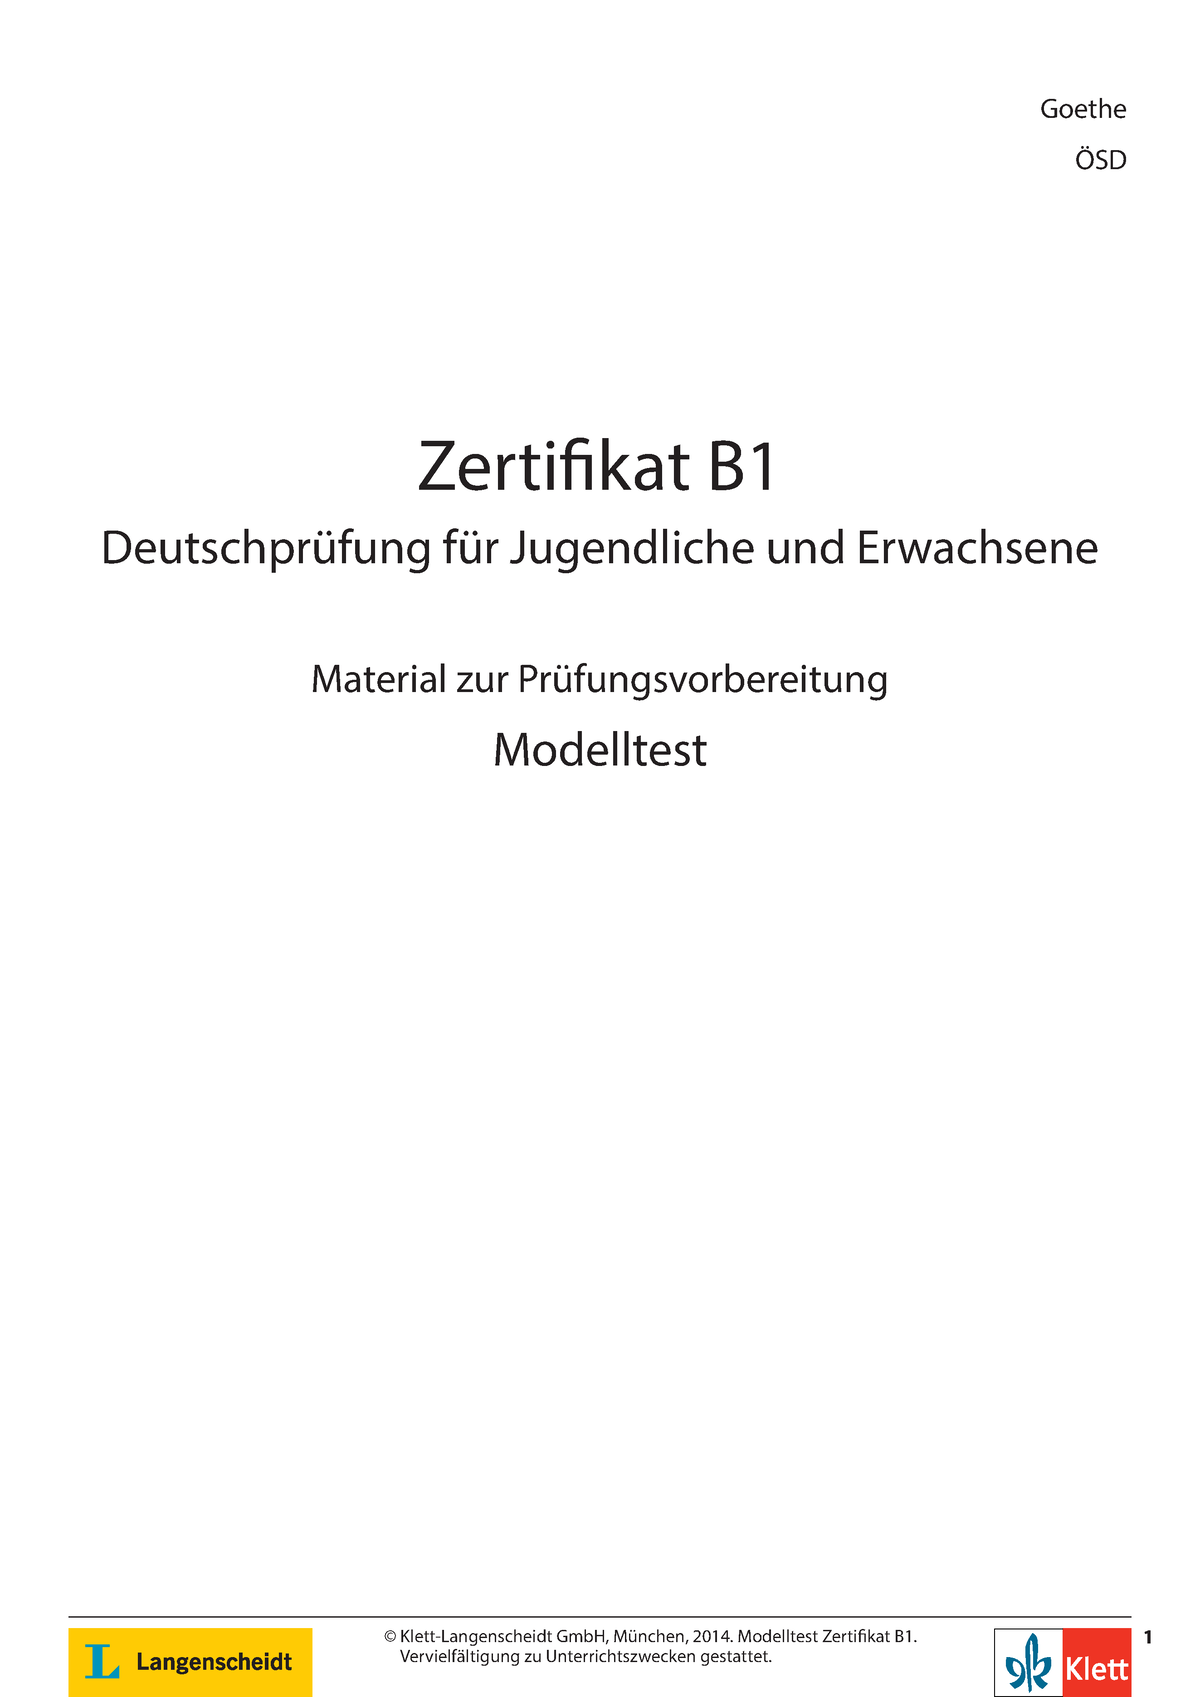 Modelltest Zertifikat B1 GI OESD1 - © Klett-Langenscheidt GmbH, München,  2014. Modelltest Zerti kat - Studocu